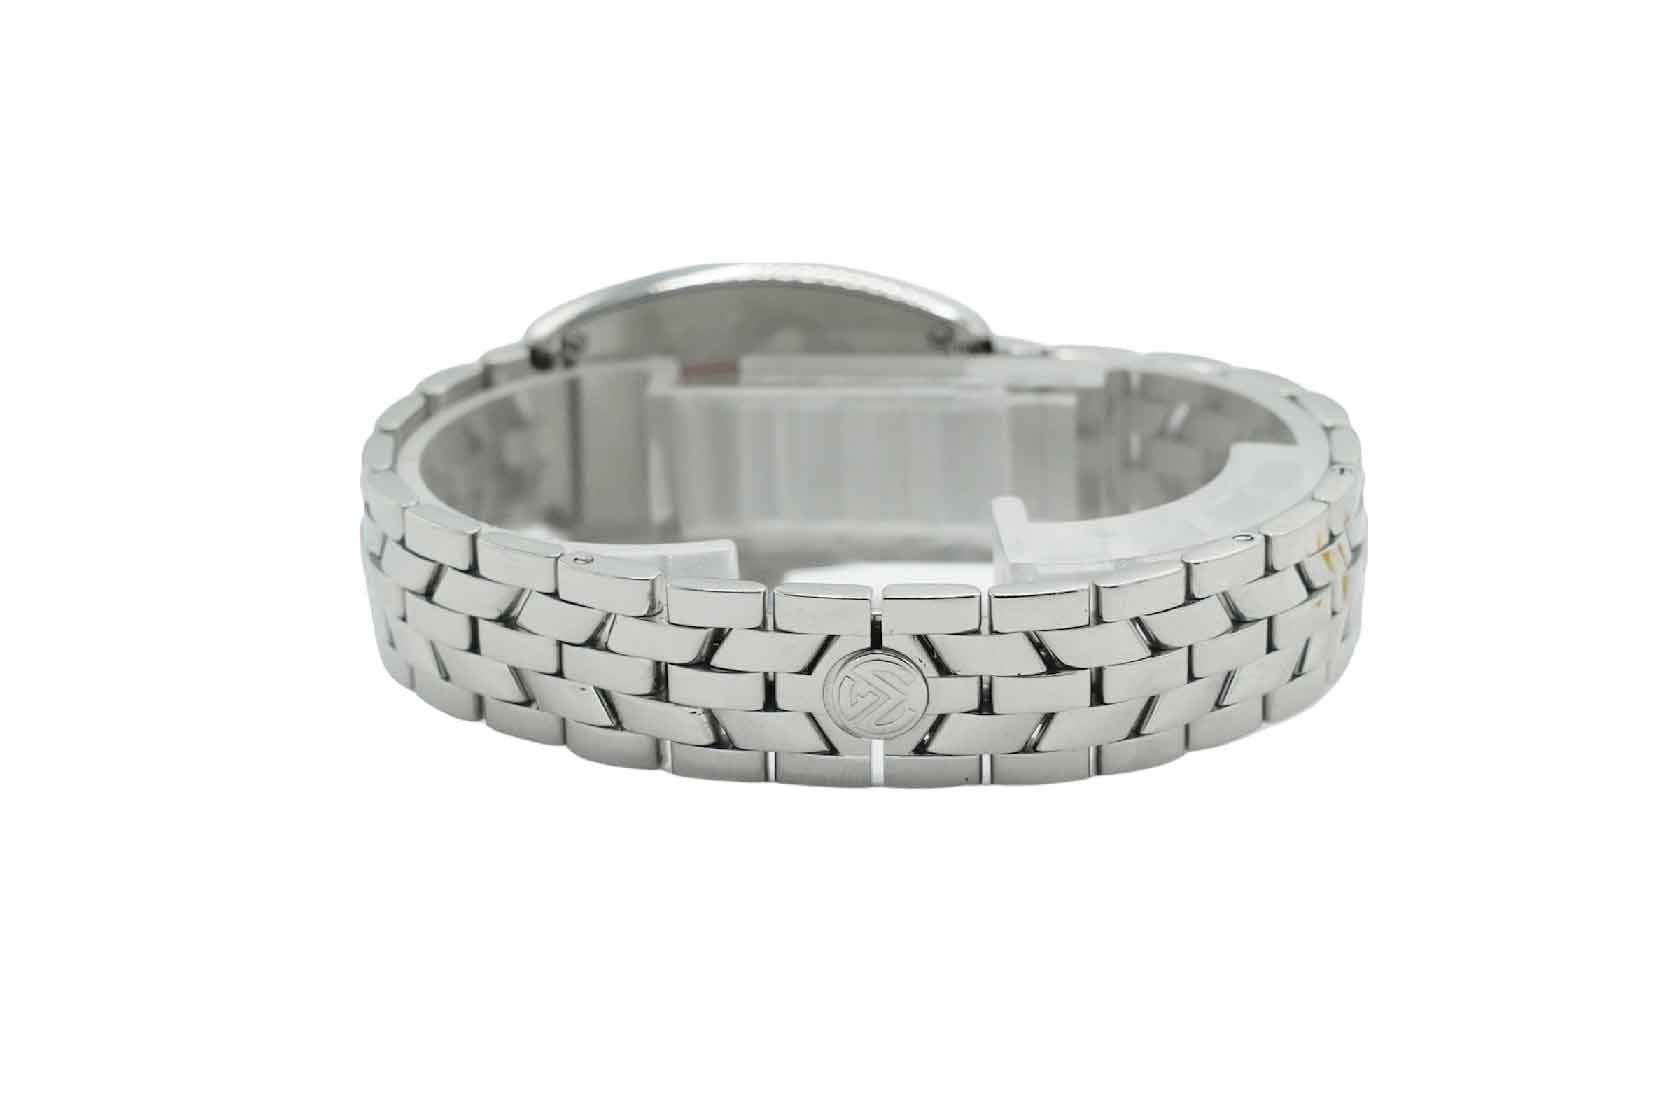 Frank Muller Cintrée Curvex Watch Factory Diamond Bezel Full set